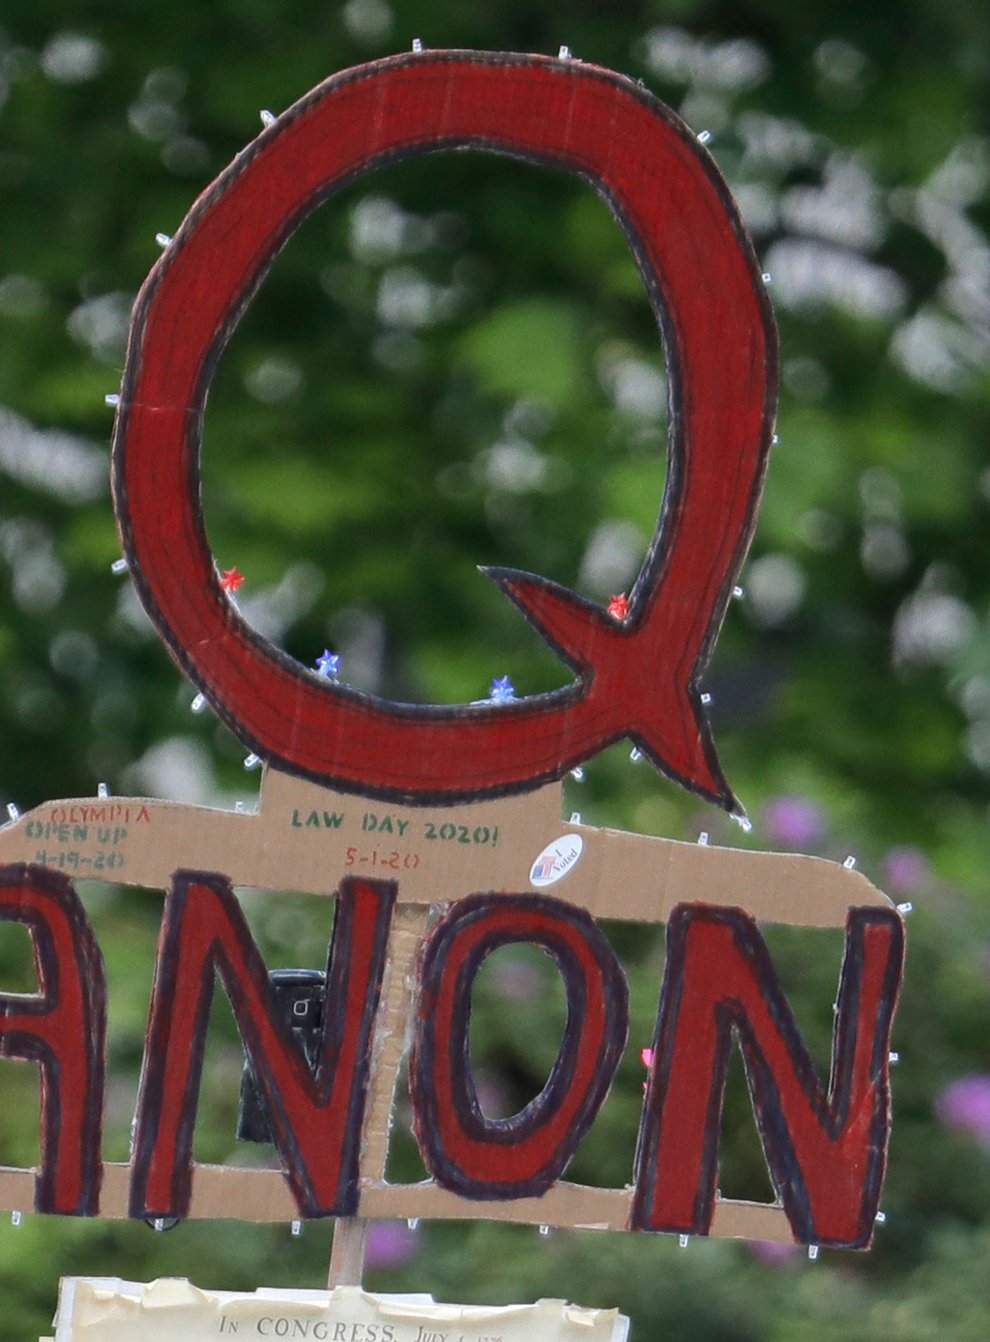 A QAnon sign